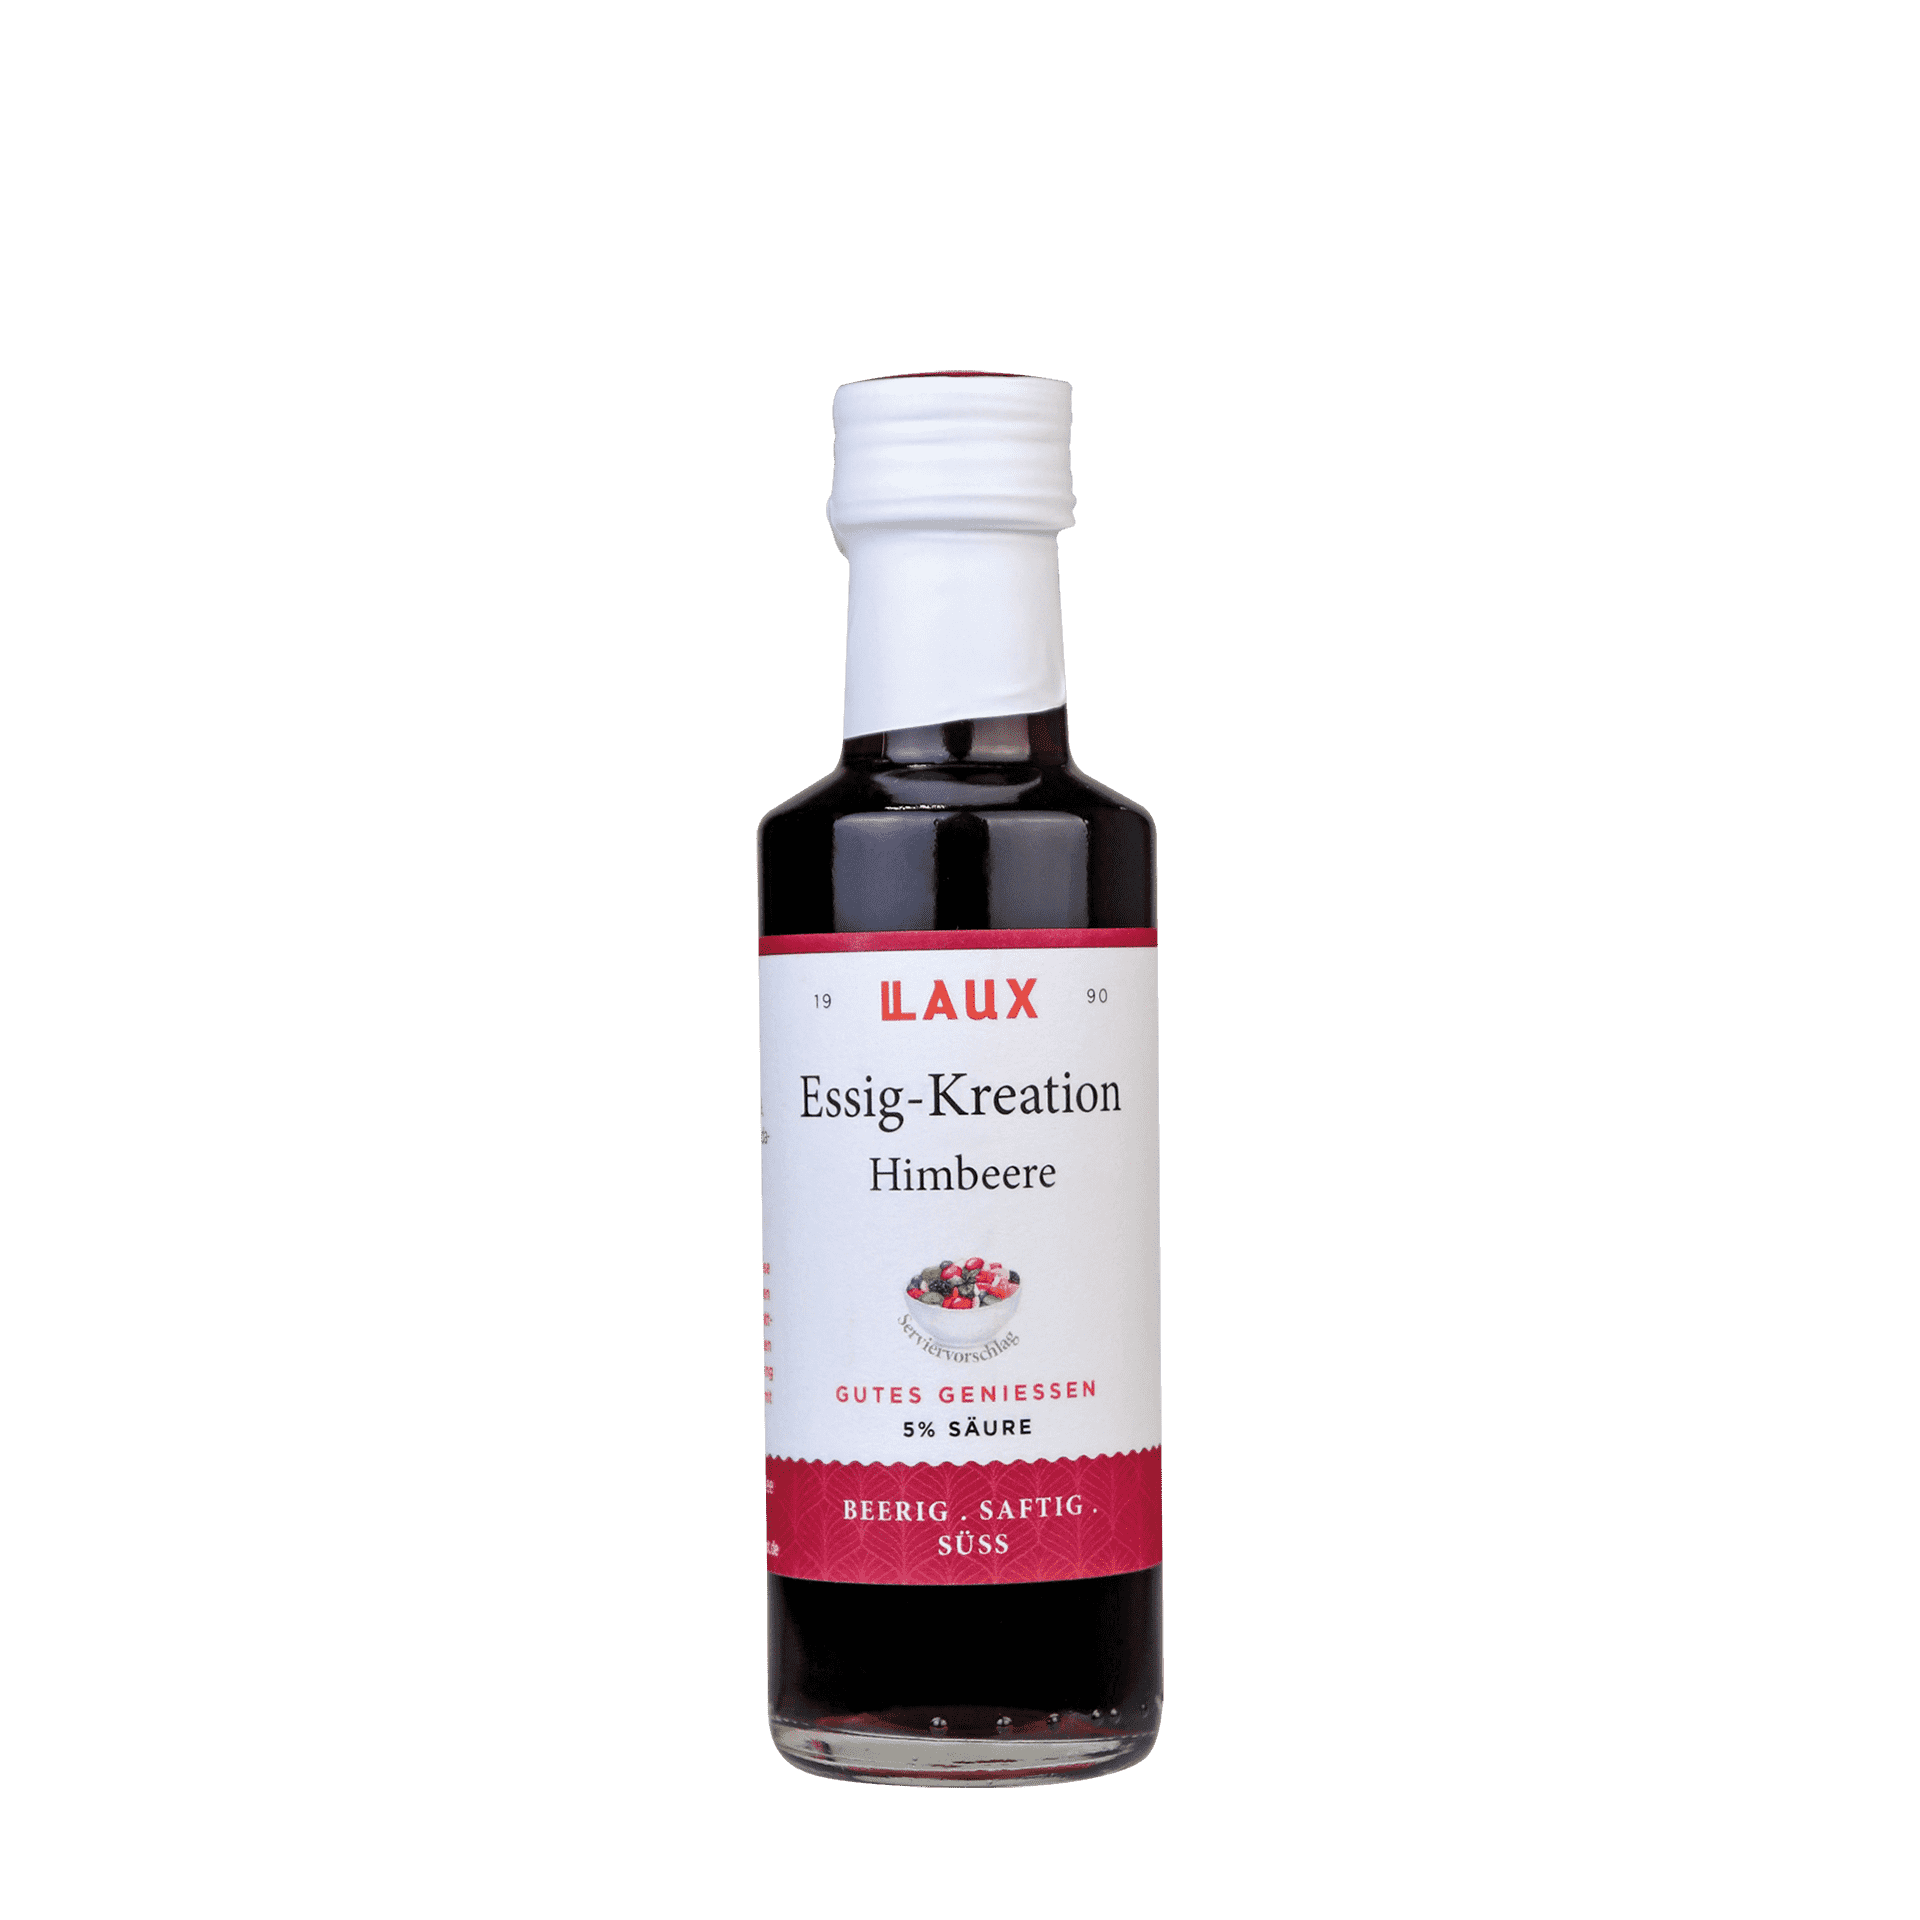 Himbeere Essig-Kreation - 100 ml Flasche - 5 % Säure